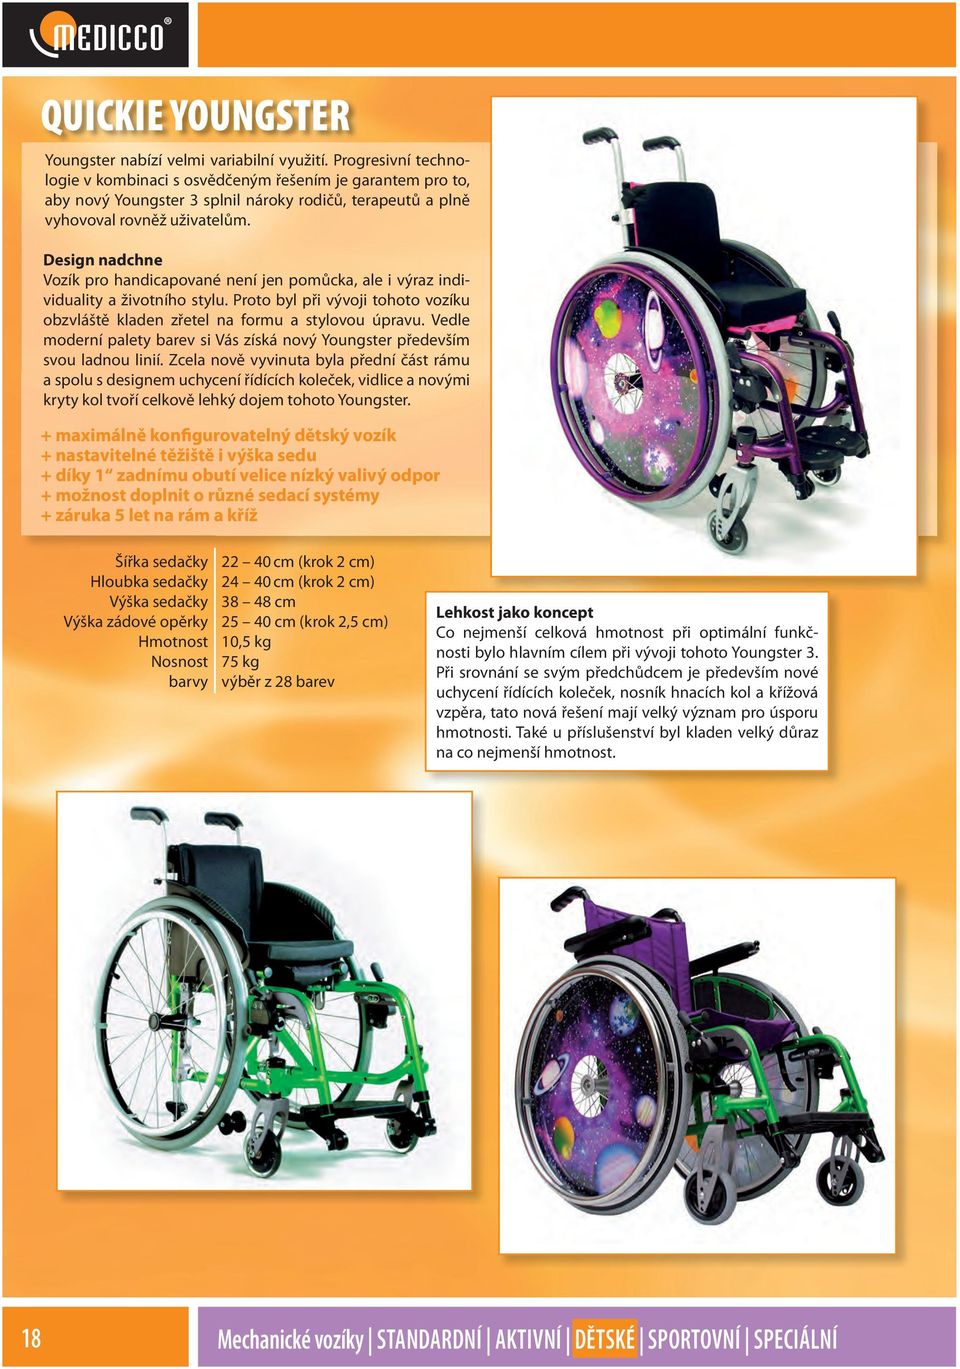 Design nadchne Vozík pro handicapované není jen pomůcka, ale i výraz individuality a životního stylu. Proto byl při vývoji tohoto vozíku obzvláště kladen zřetel na formu a stylovou úpravu.